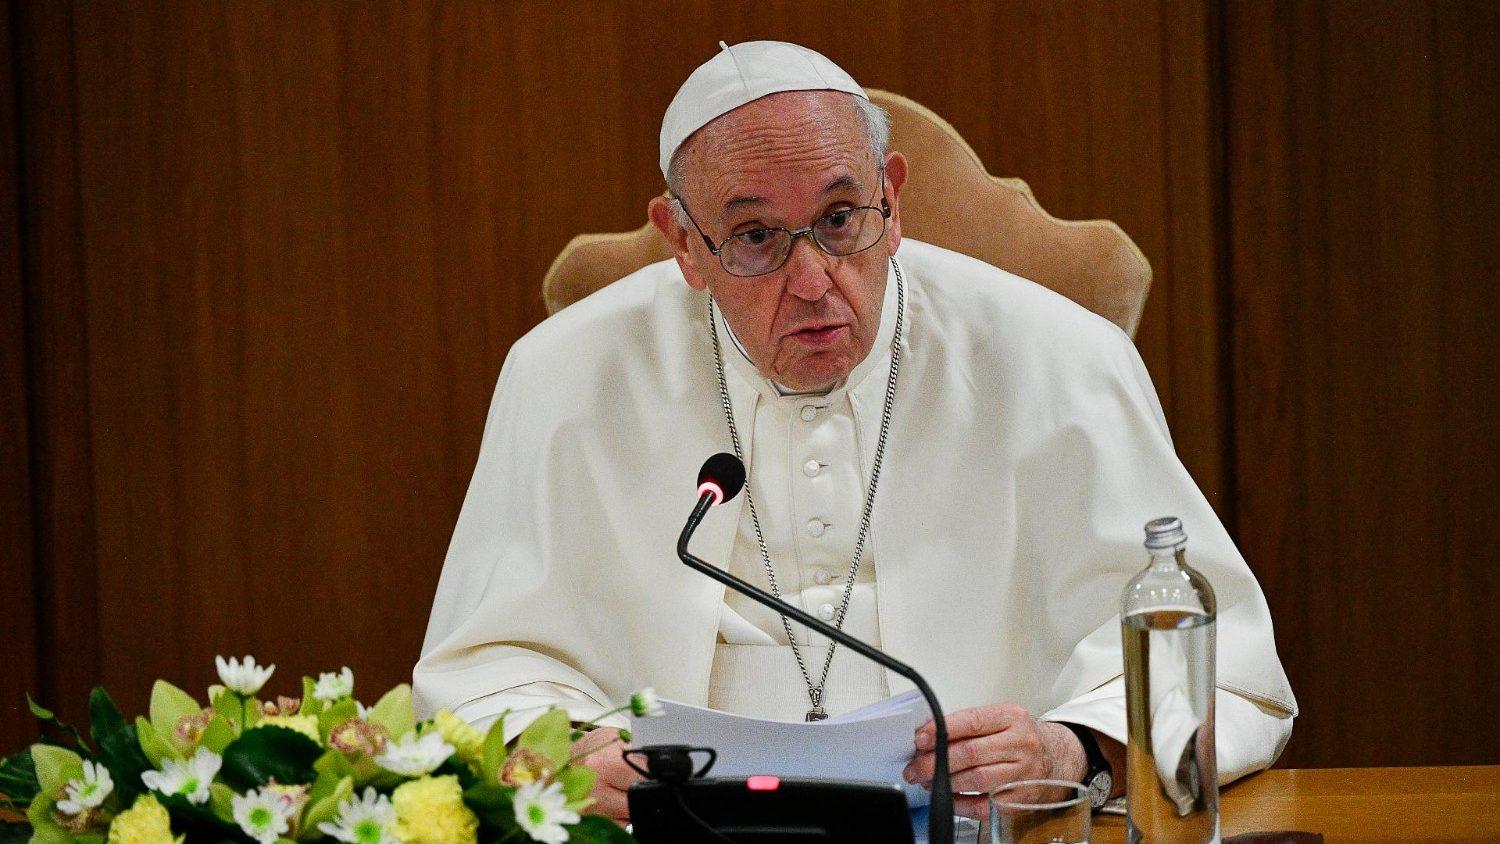 A abertura do Sínodo 2021-2023 acontece no Vaticano, sob a presidência do Papa, entre hoje e amanhã